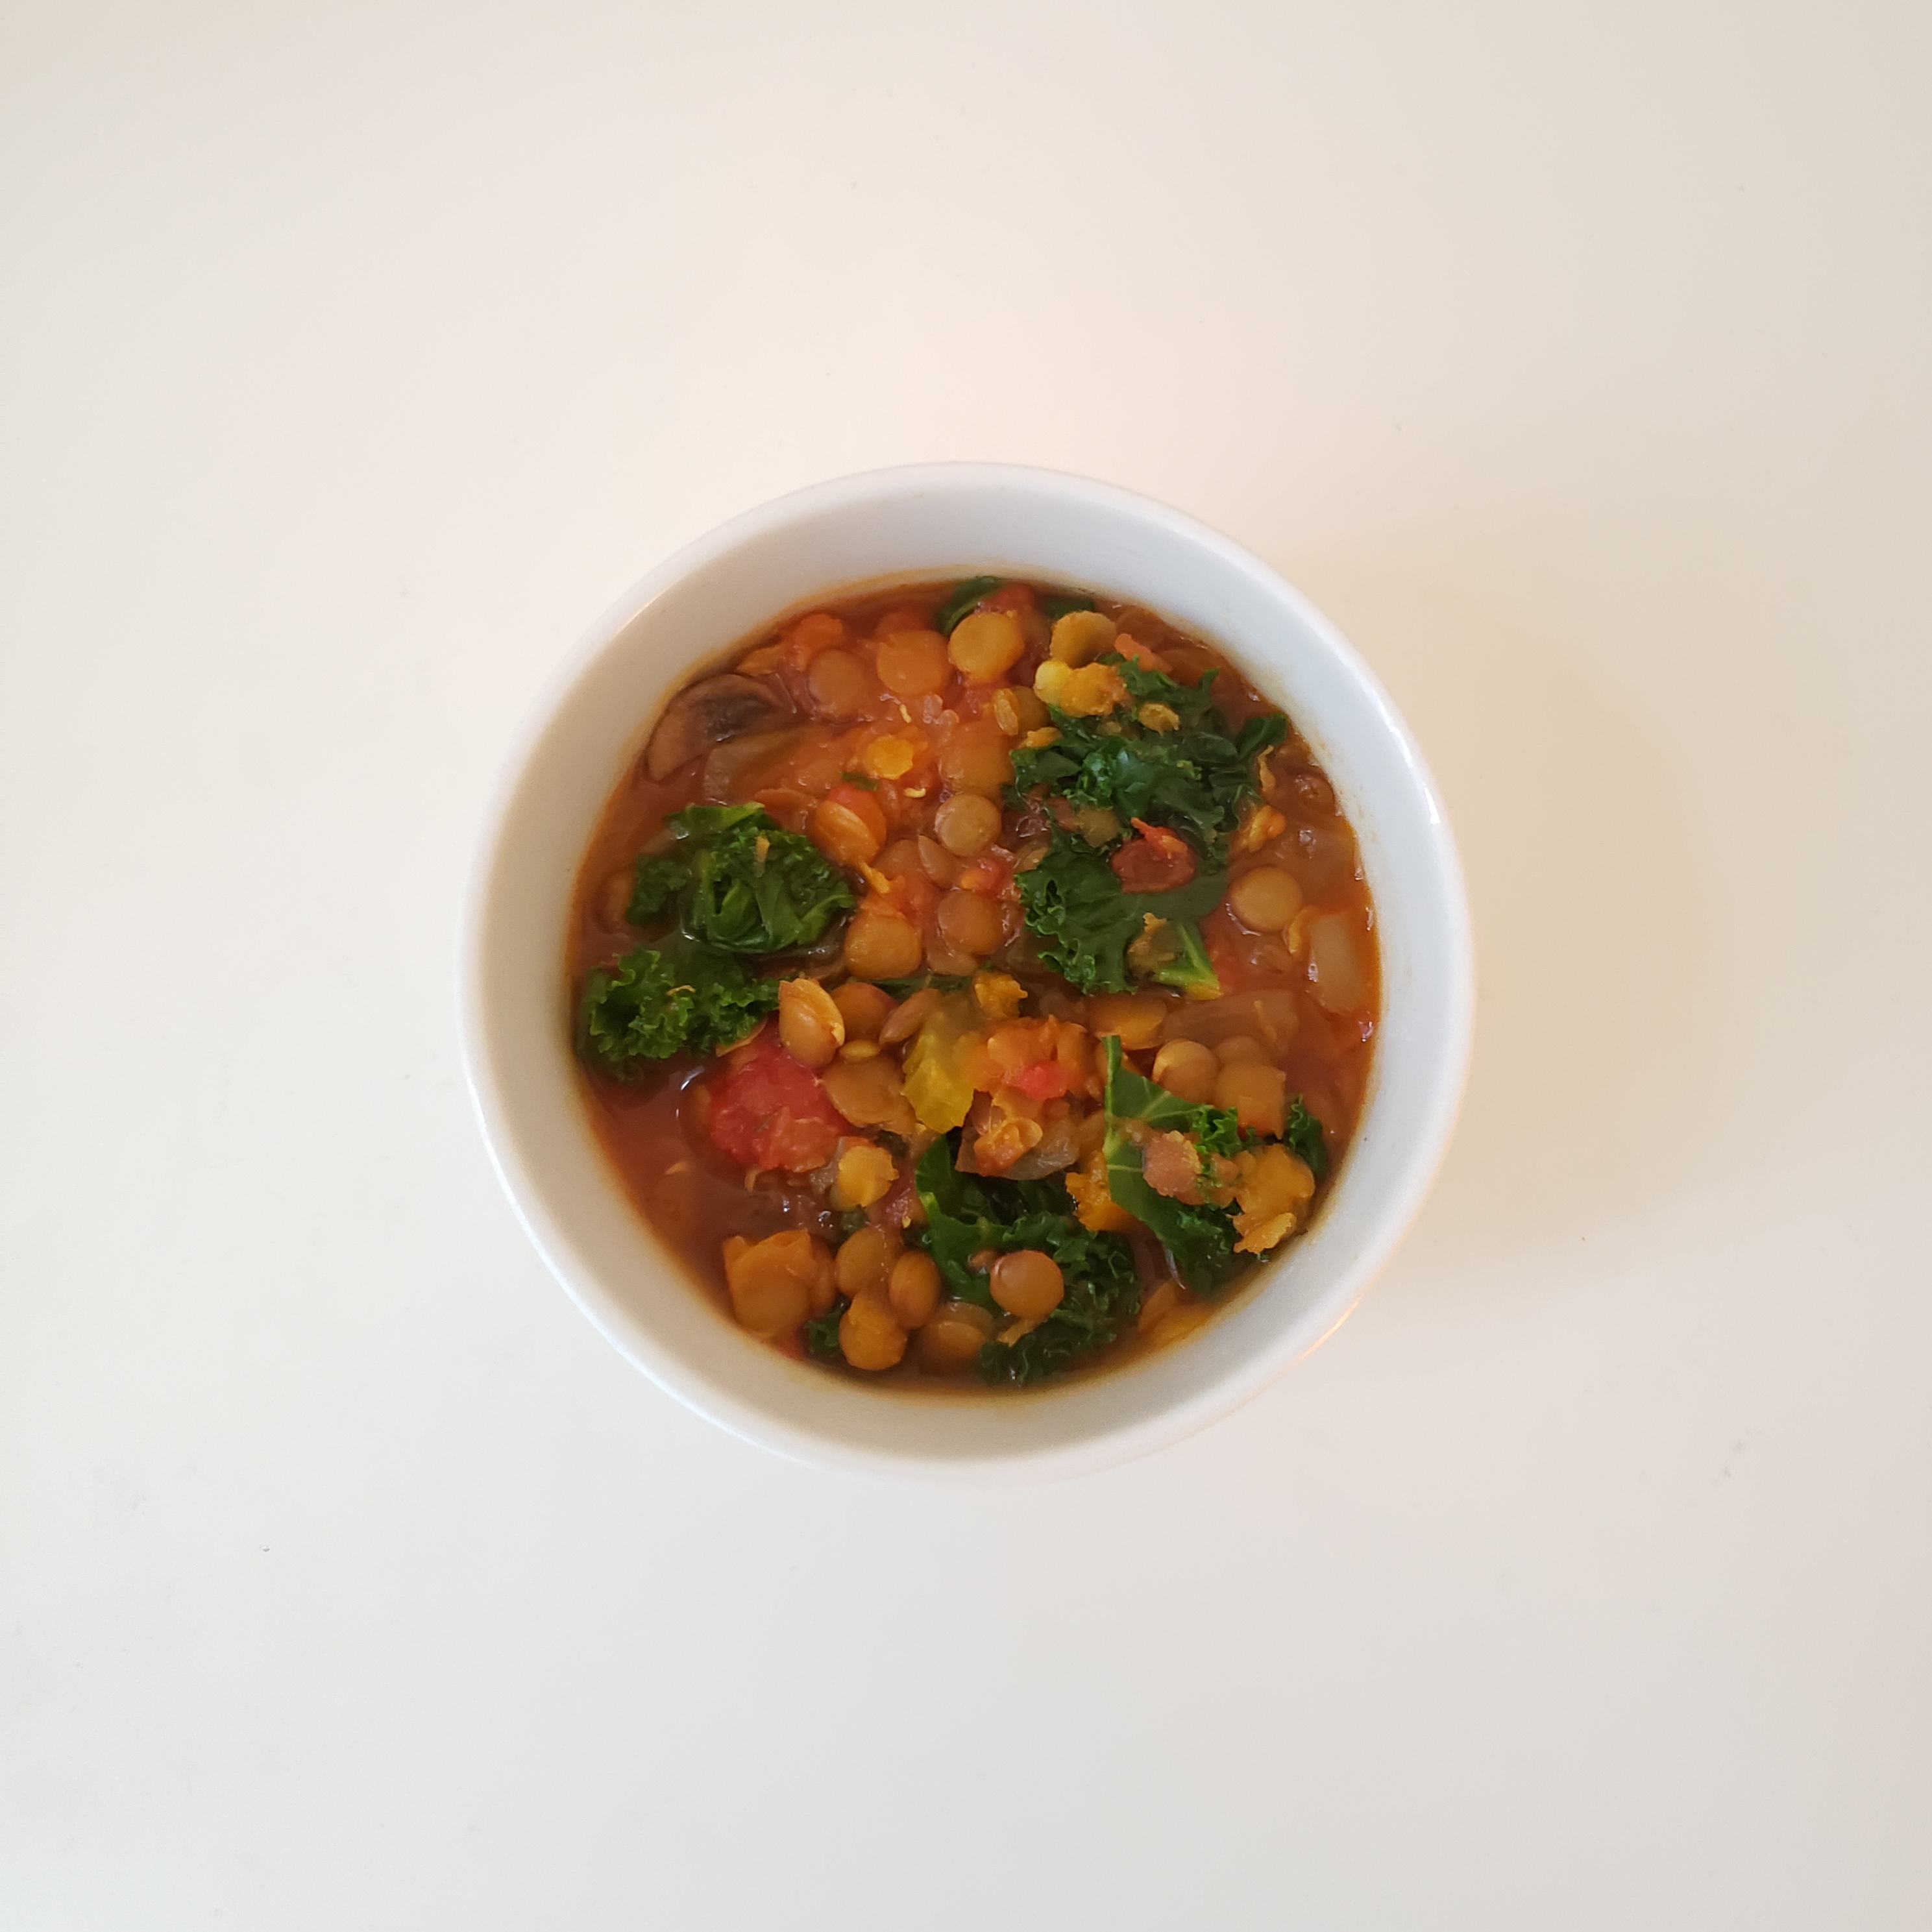 レンズ豆で鉄分補給、かぼちゃとお豆のほっこりカレースープ